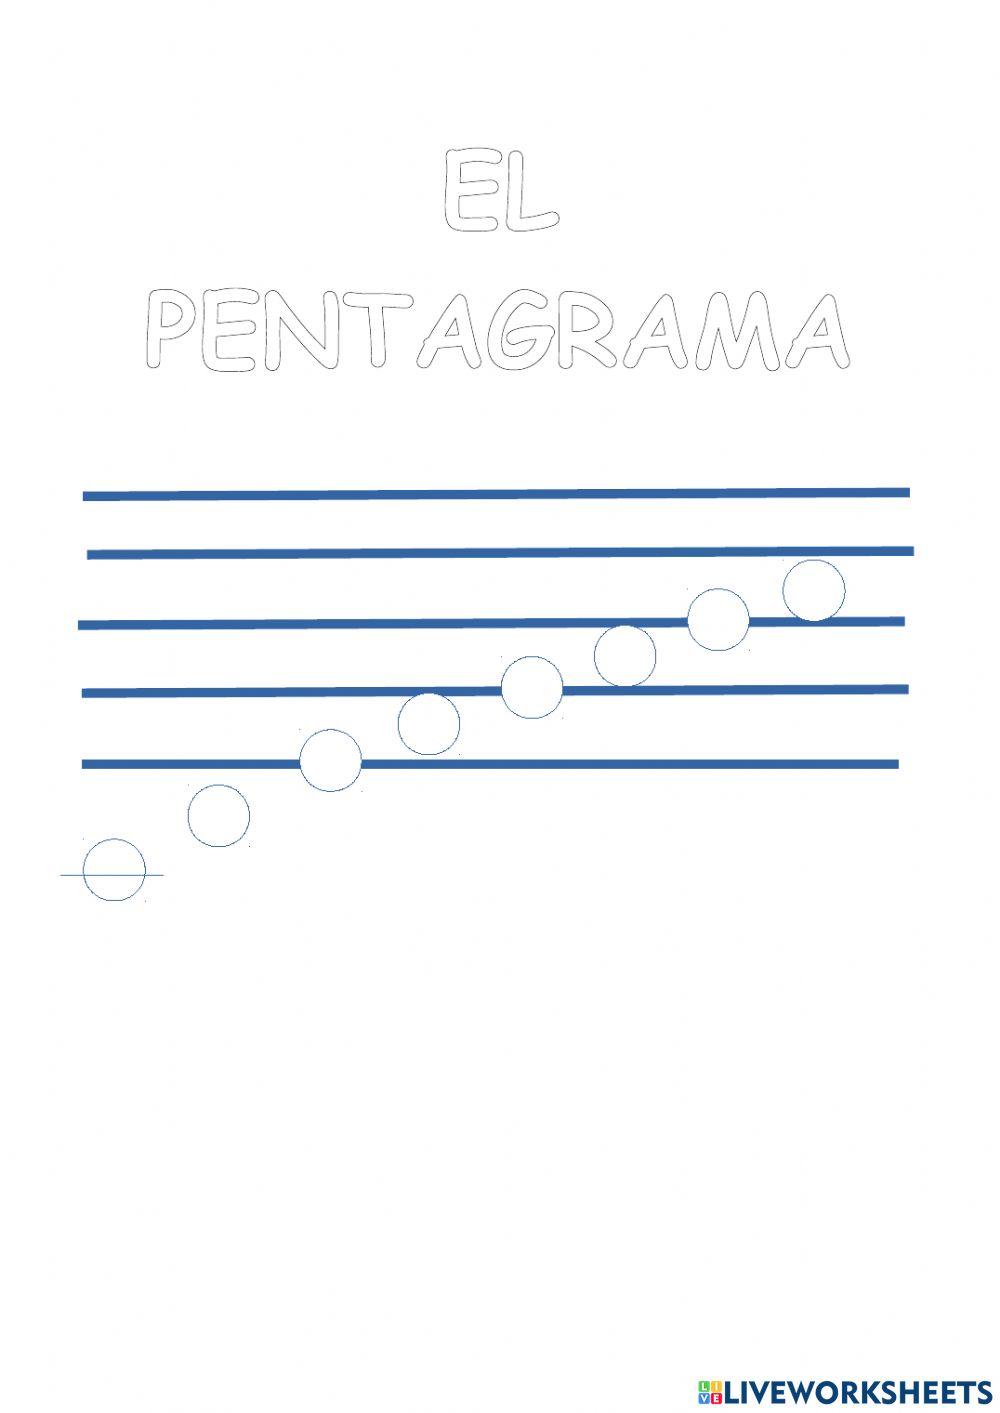 El pentagrama y las notas